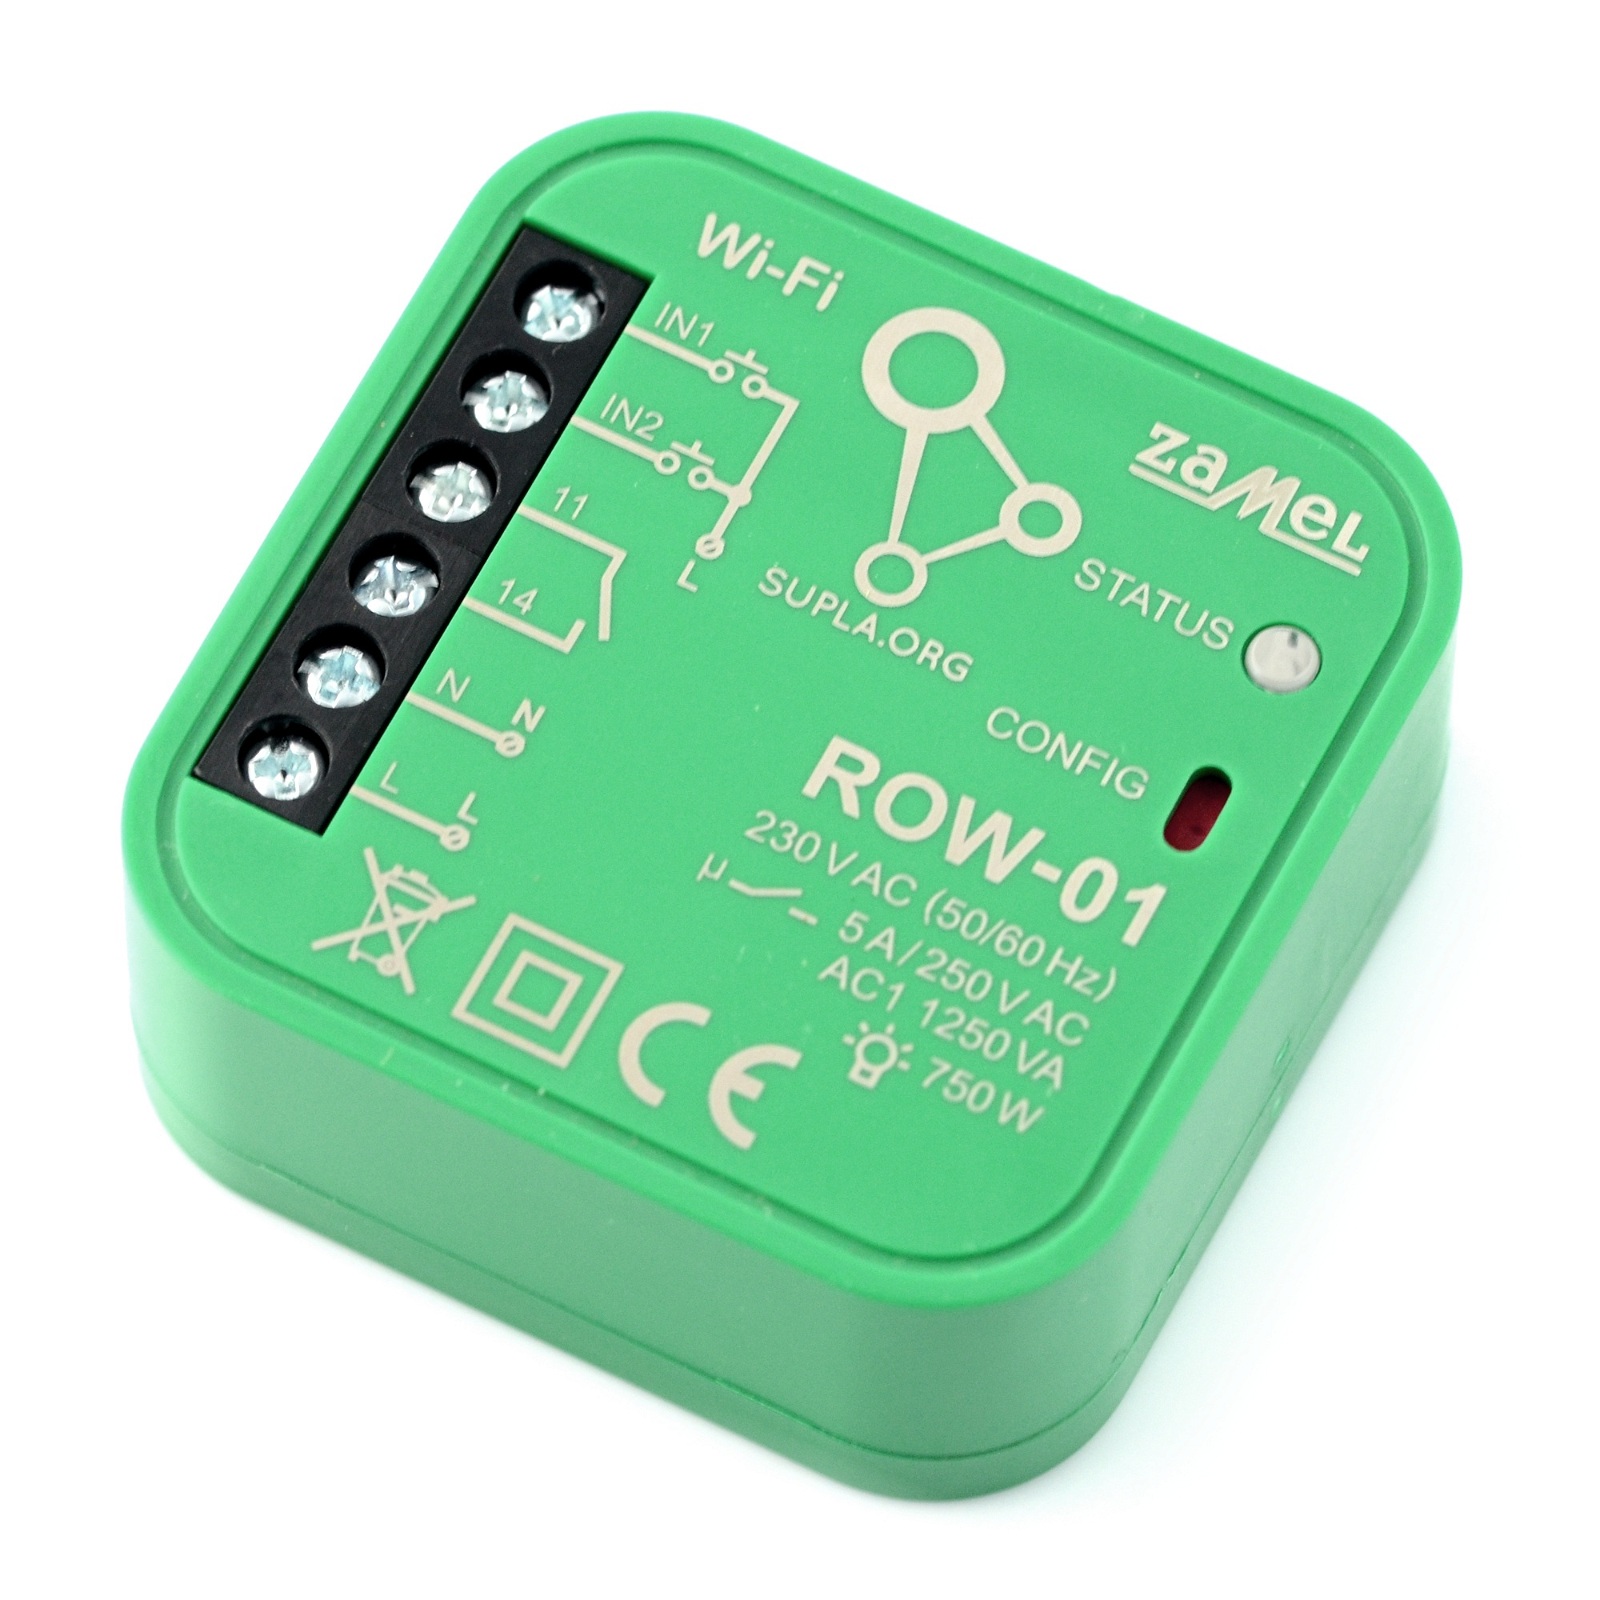 Zamel Supla ROW-01 - przekaźnik 230V WiFi - aplikacja Android / iOS